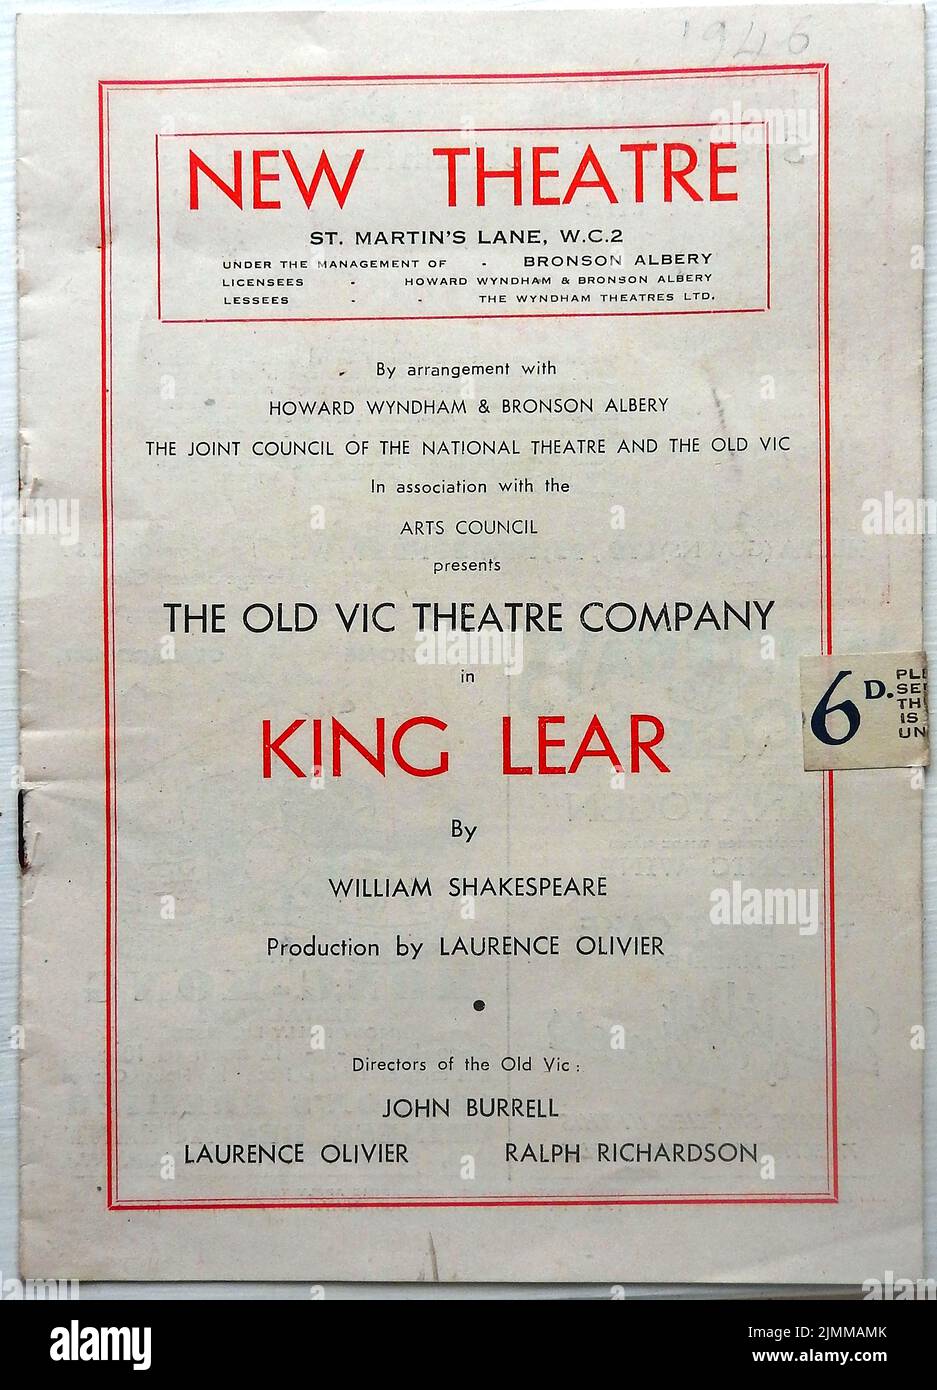 Un programma teatrale d'epoca 1946 - New Theatre, Londra, che presenta una produzione post-bellica della Old Vic Company - King Lear di William Shakespeare. Produzione di Laurence Olivier. Il costo del programma a quel tempo era di 6d (sei pence) Foto Stock